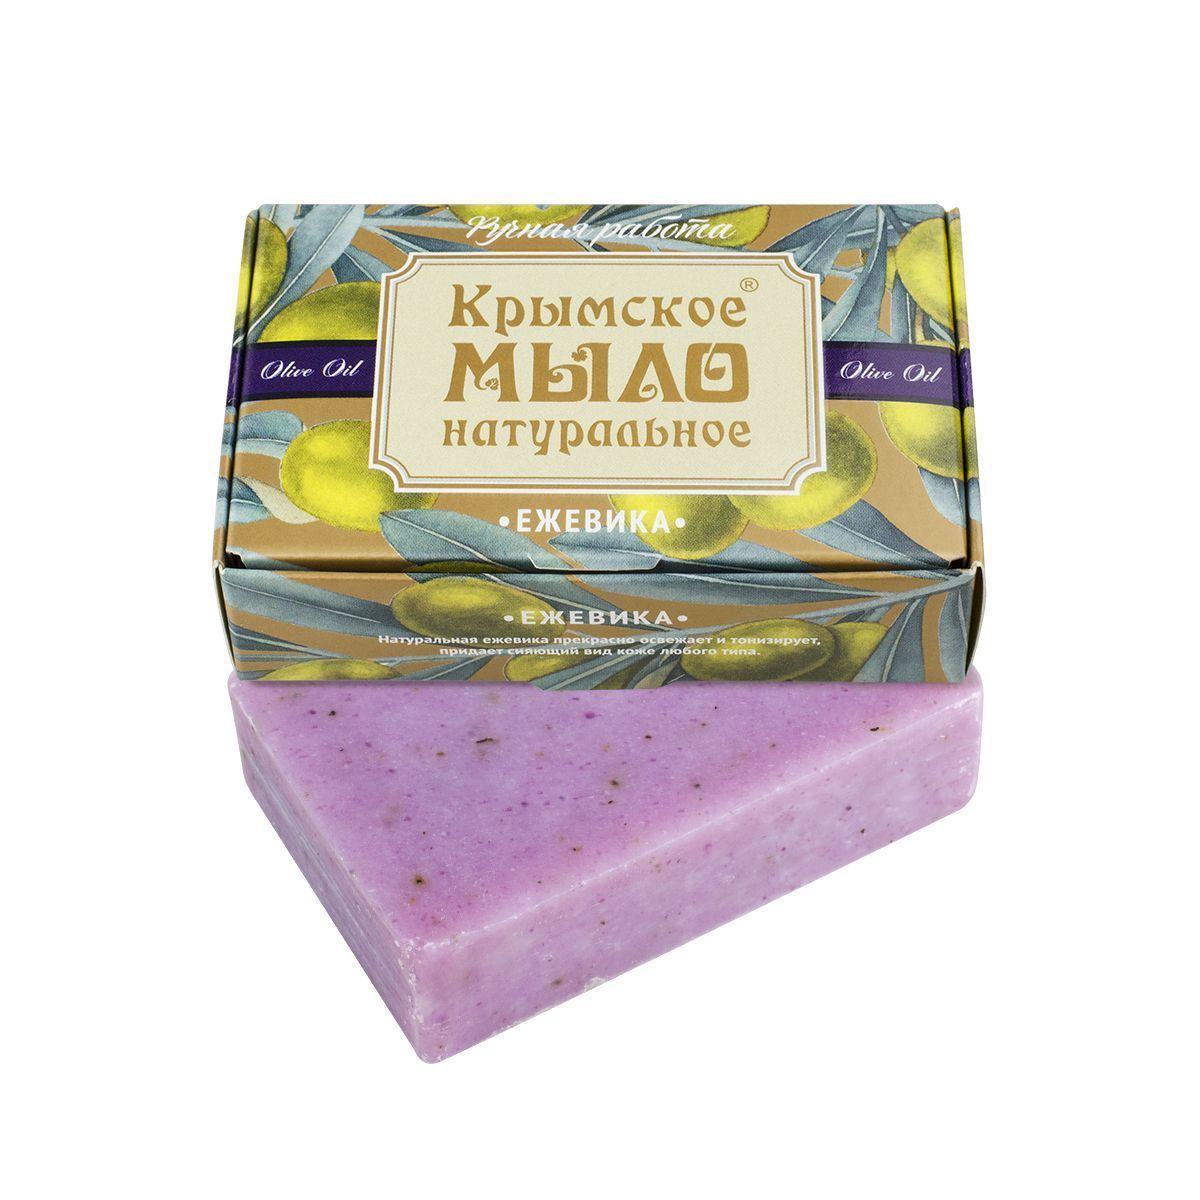 картинка Крымское натуральное мыло на оливковом масле "ЕЖЕВИКА" от магазина натуральной косметики La Vanda